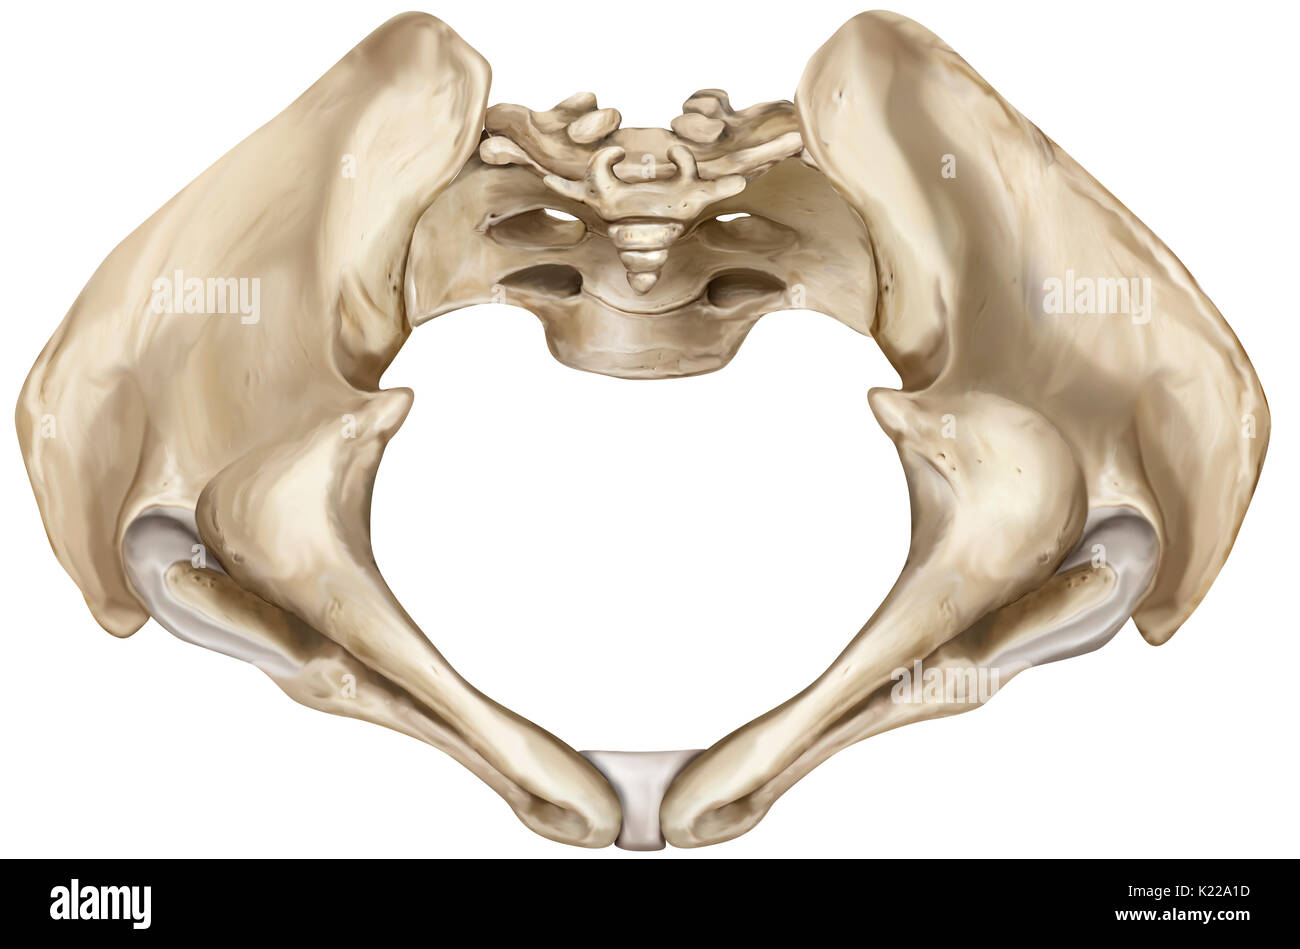 Knöcherne Gürtel bestehend aus dem Kreuzbein, Steißbein und zwei darmbein Knochen, verbinden die Gebeine der unteren Gliedmaßen zum axialen Skelett. Stockfoto